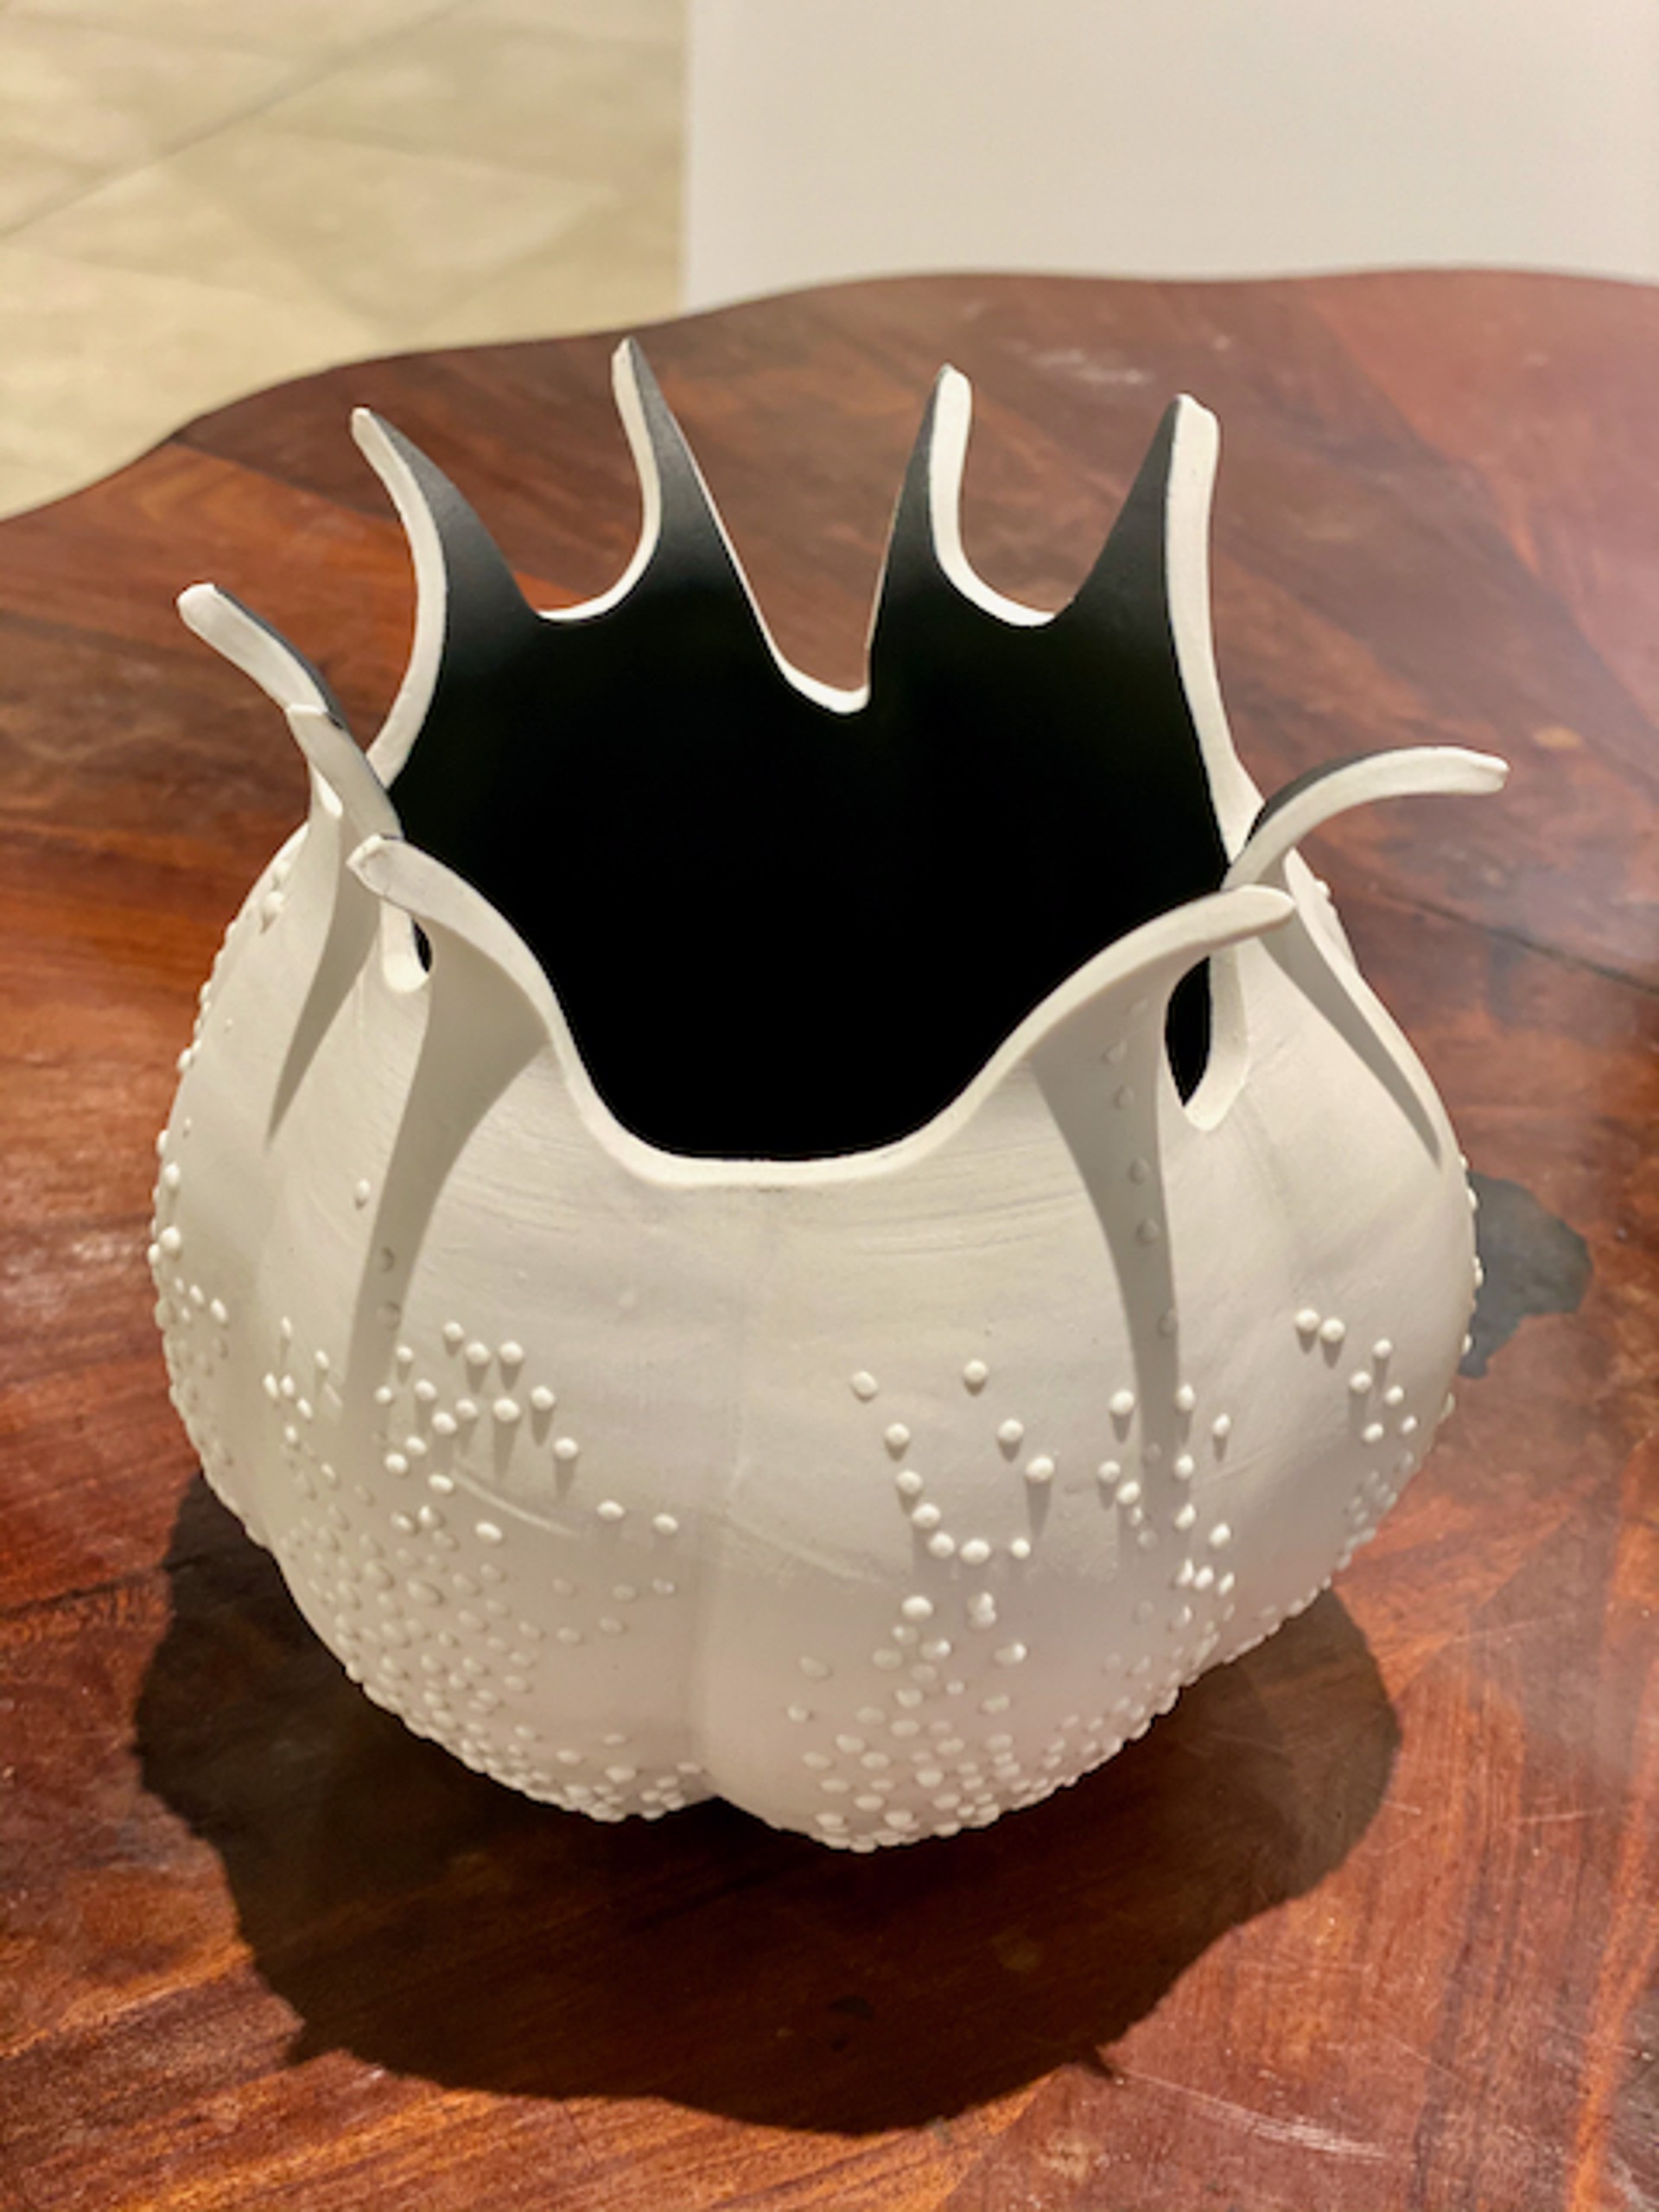 Splash Bowl (8x7.5) by Eileen Braun